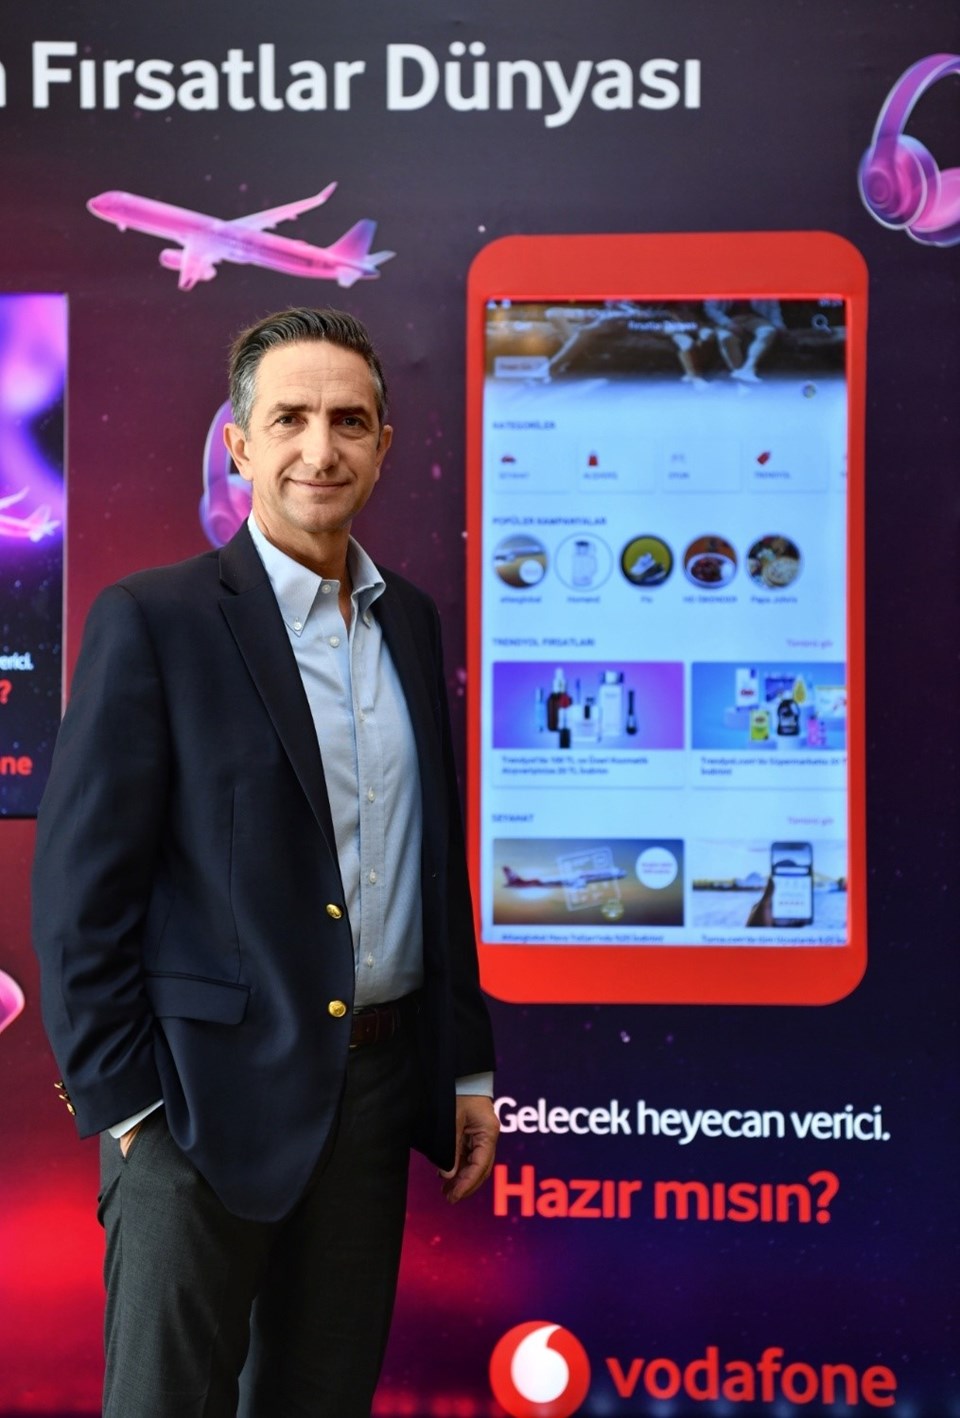 'Vodafone Yanımda' uygulaması ile 69 markadan 500 milyon liralık avantaj sağlanacak - 1